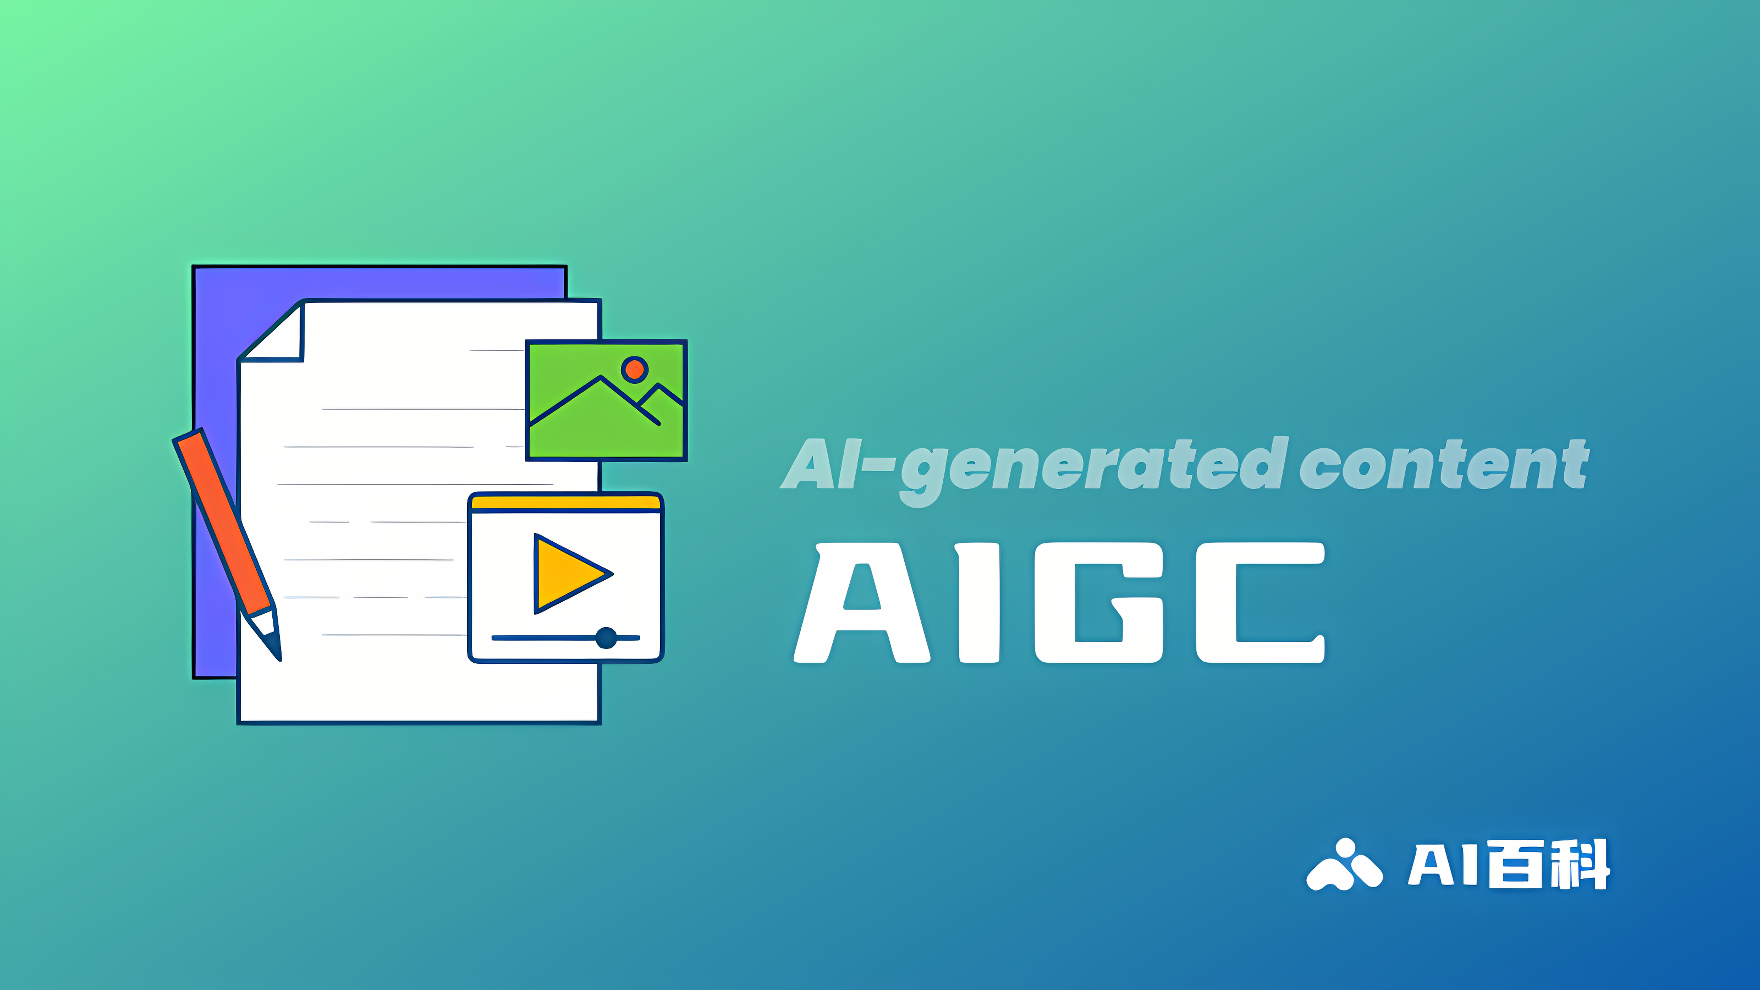 图片展示的是代表人工智能生成内容（AIGC）的图标和文字，有文件、图片和视频的符号，背景是渐变的蓝绿色。